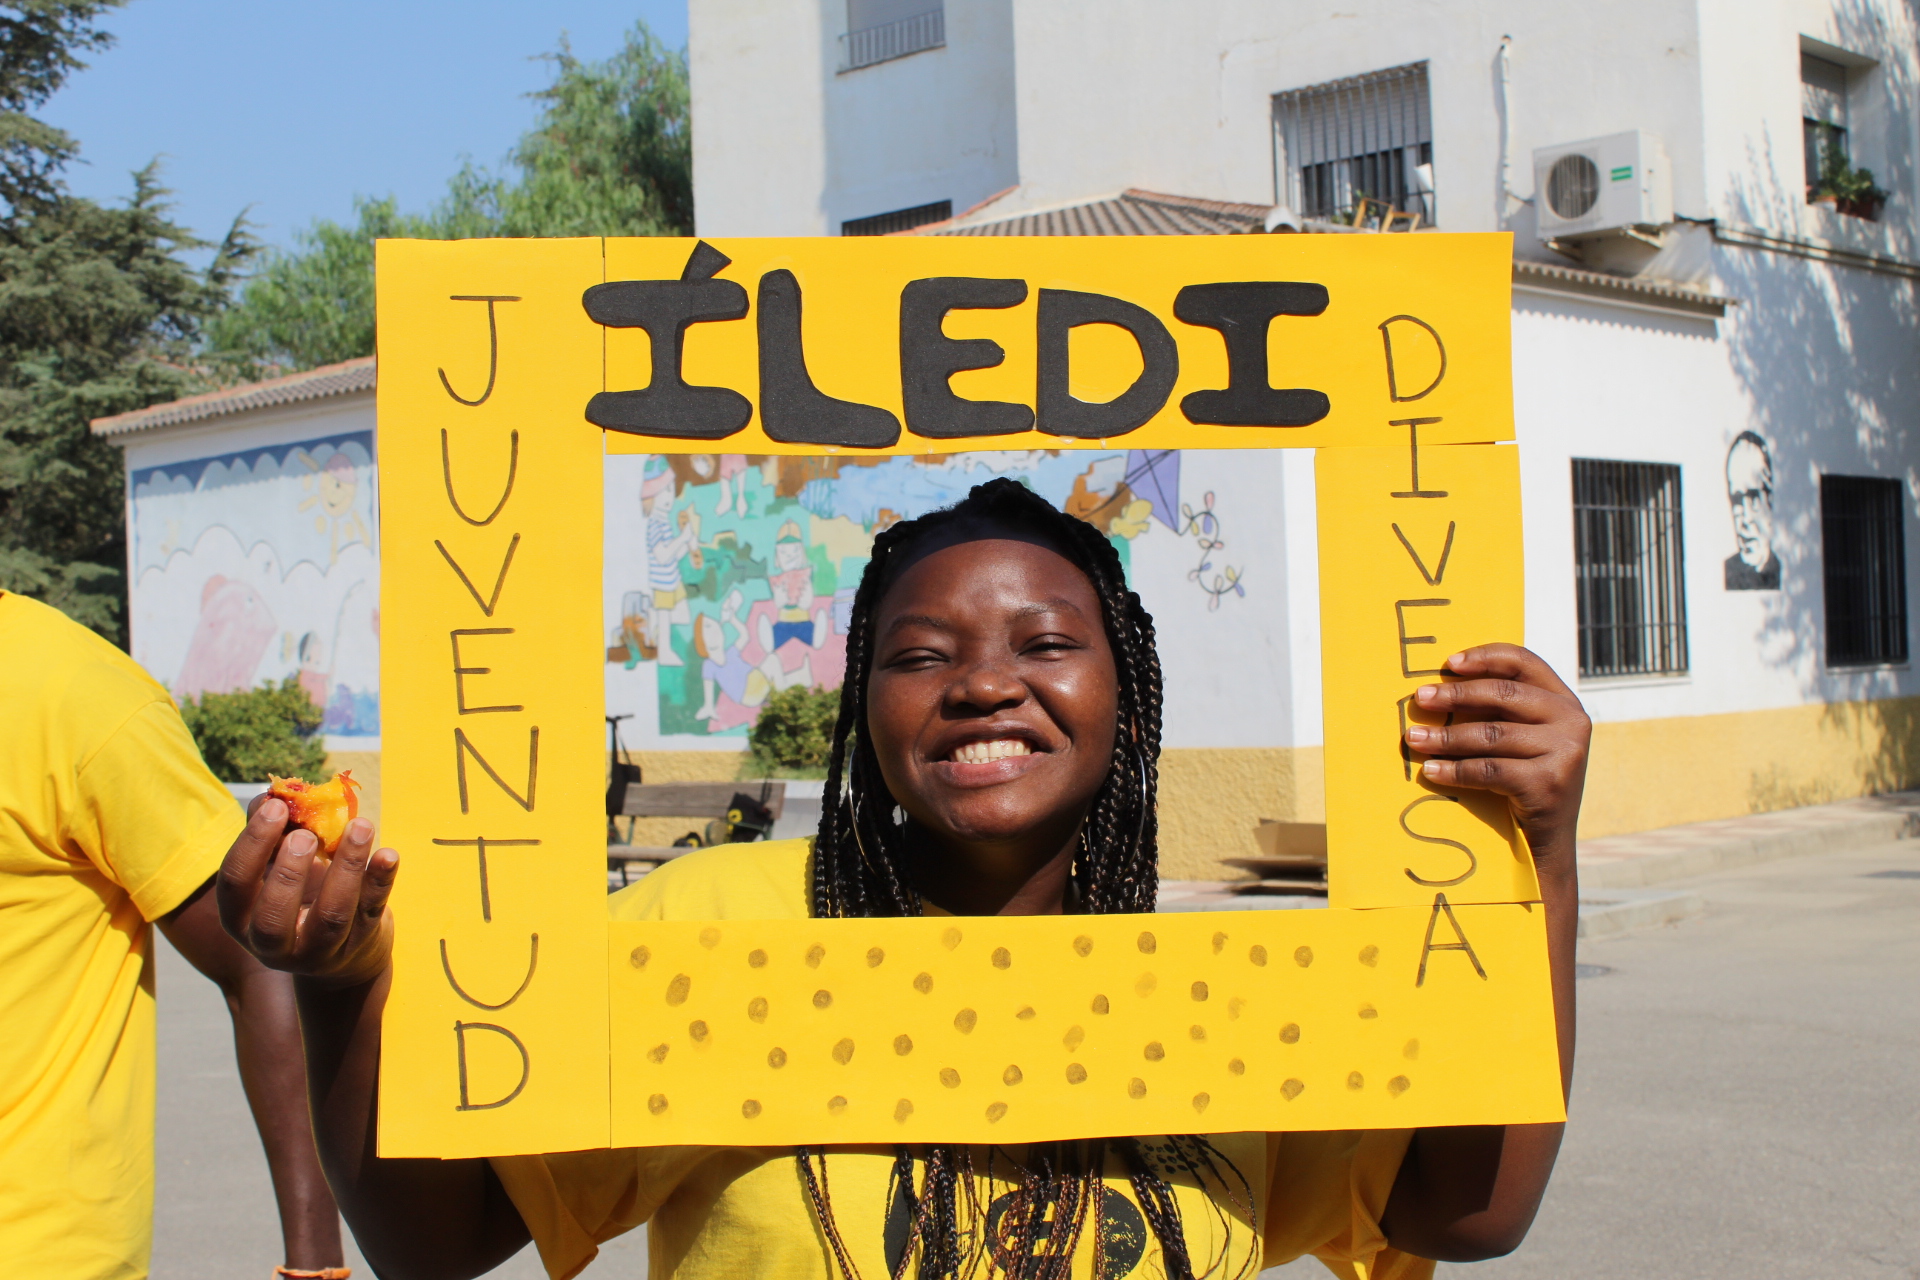 El proyecto Íledi pone en valor la diversidad a través del arte y la educación